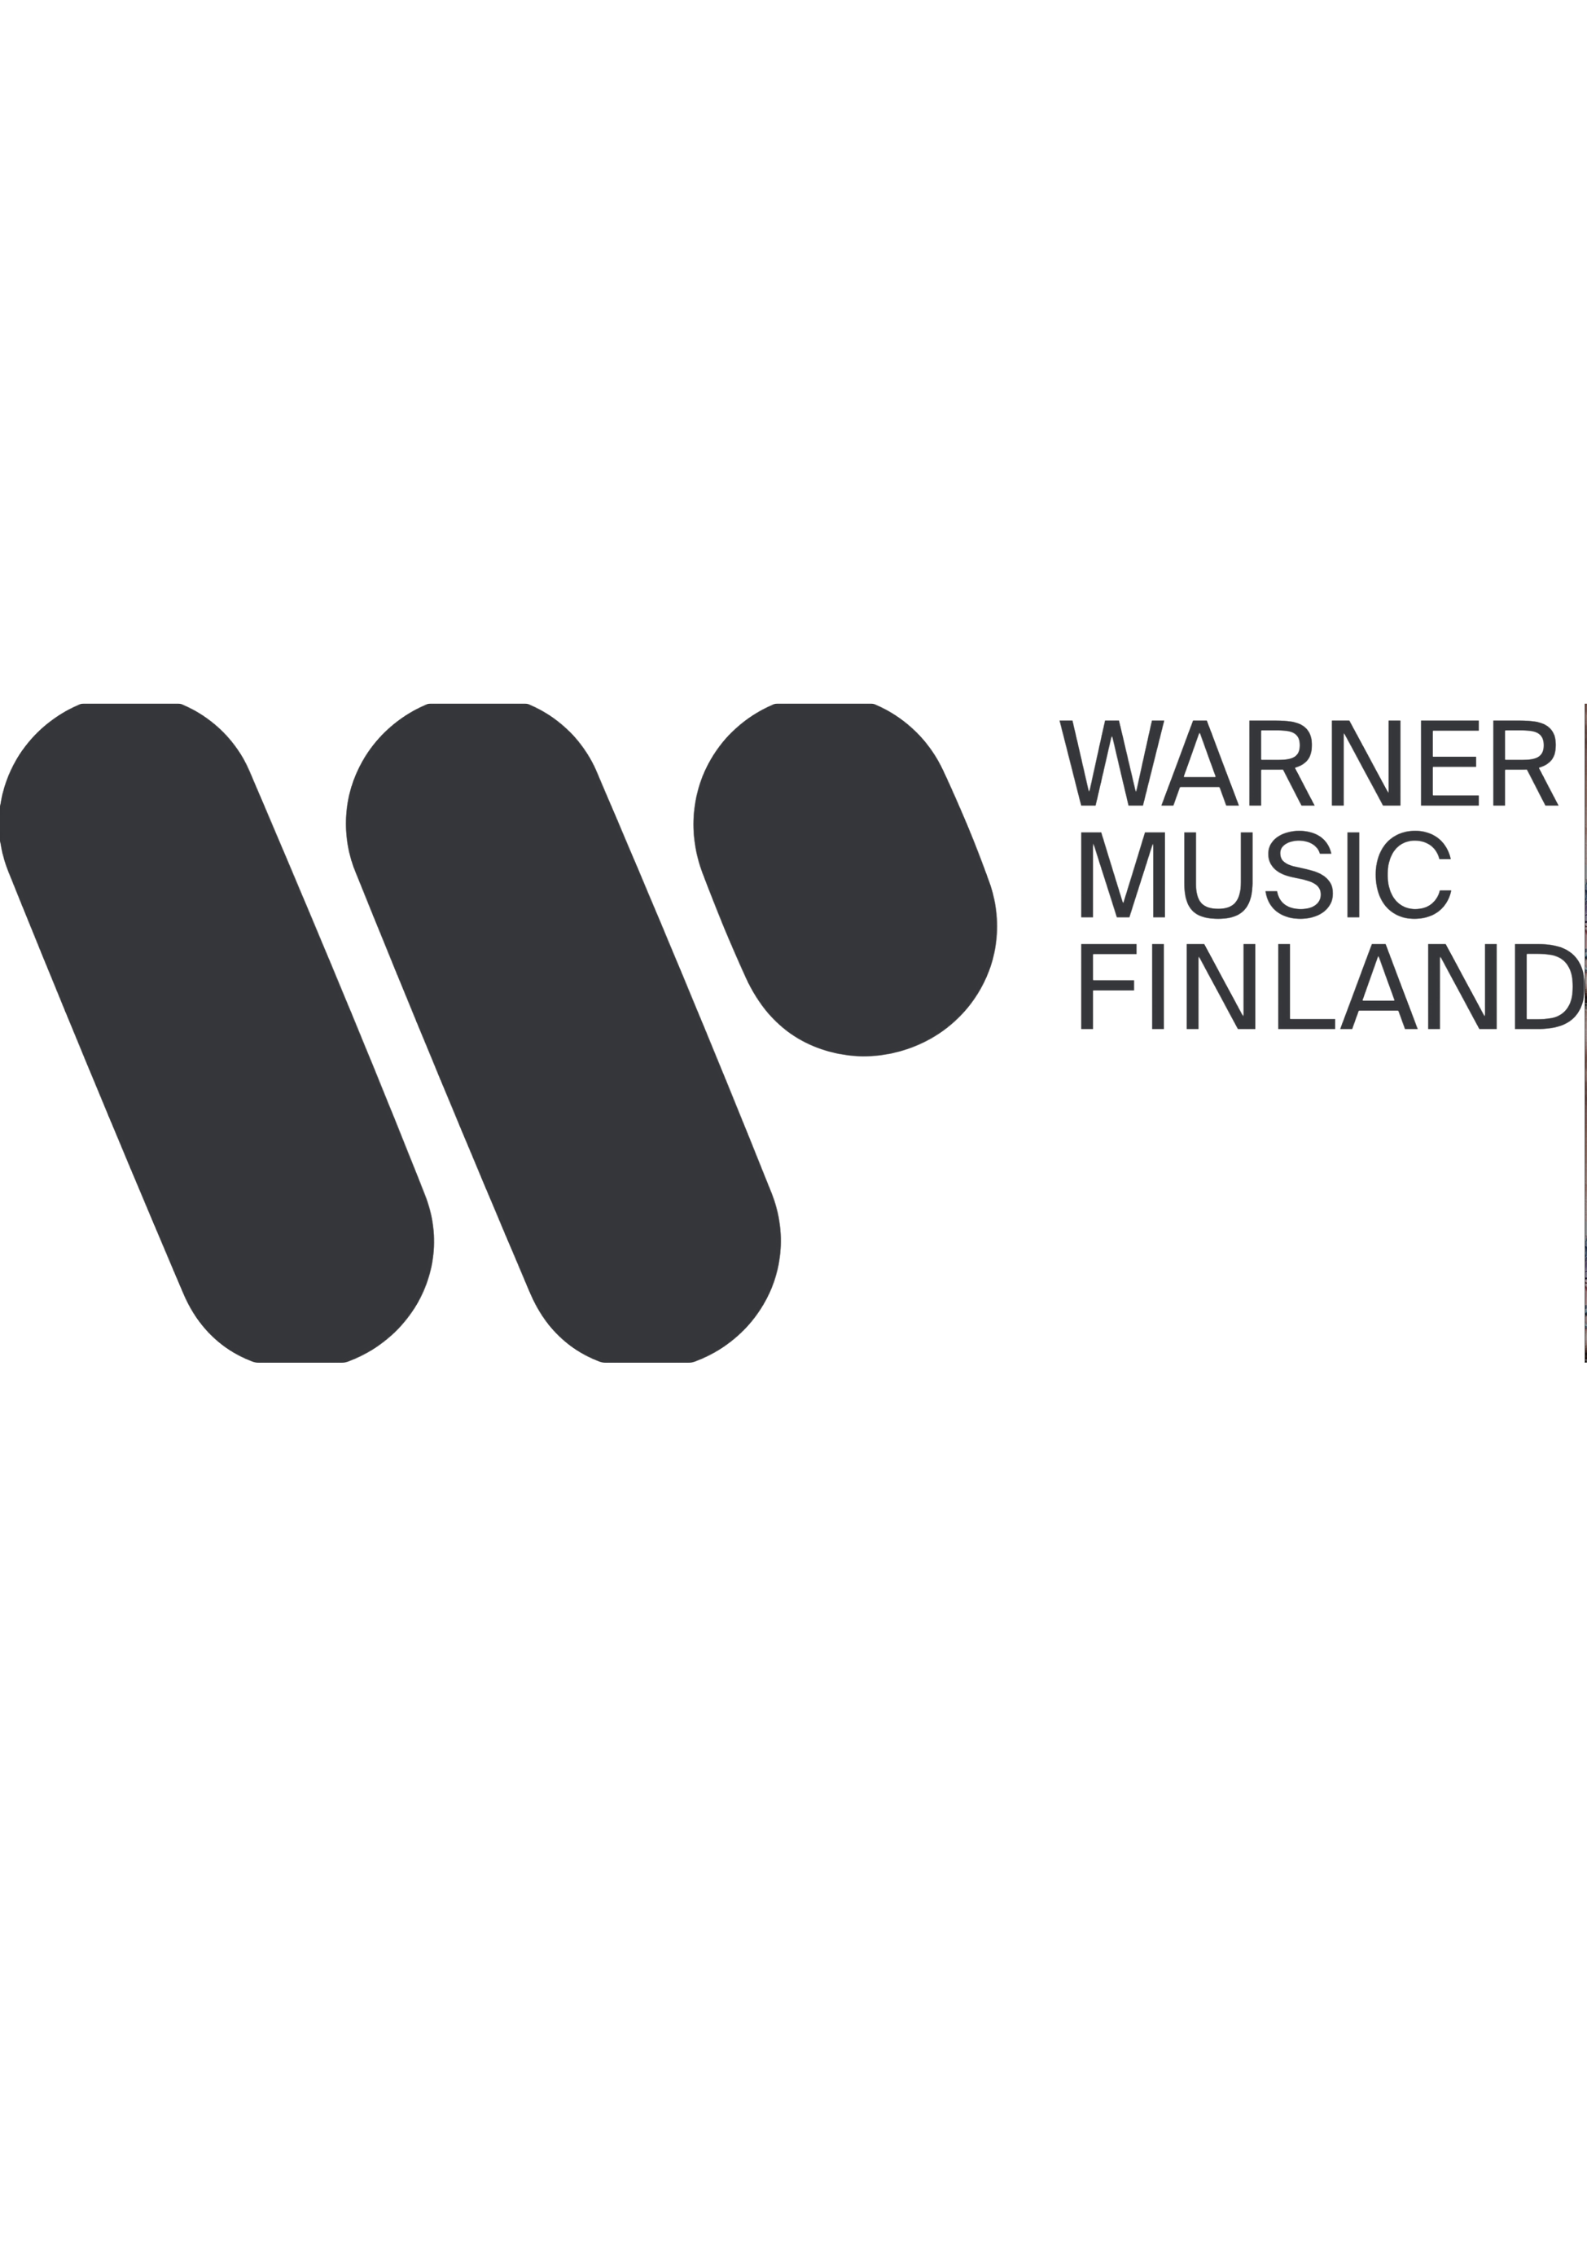 Warner Music Finland logo.png